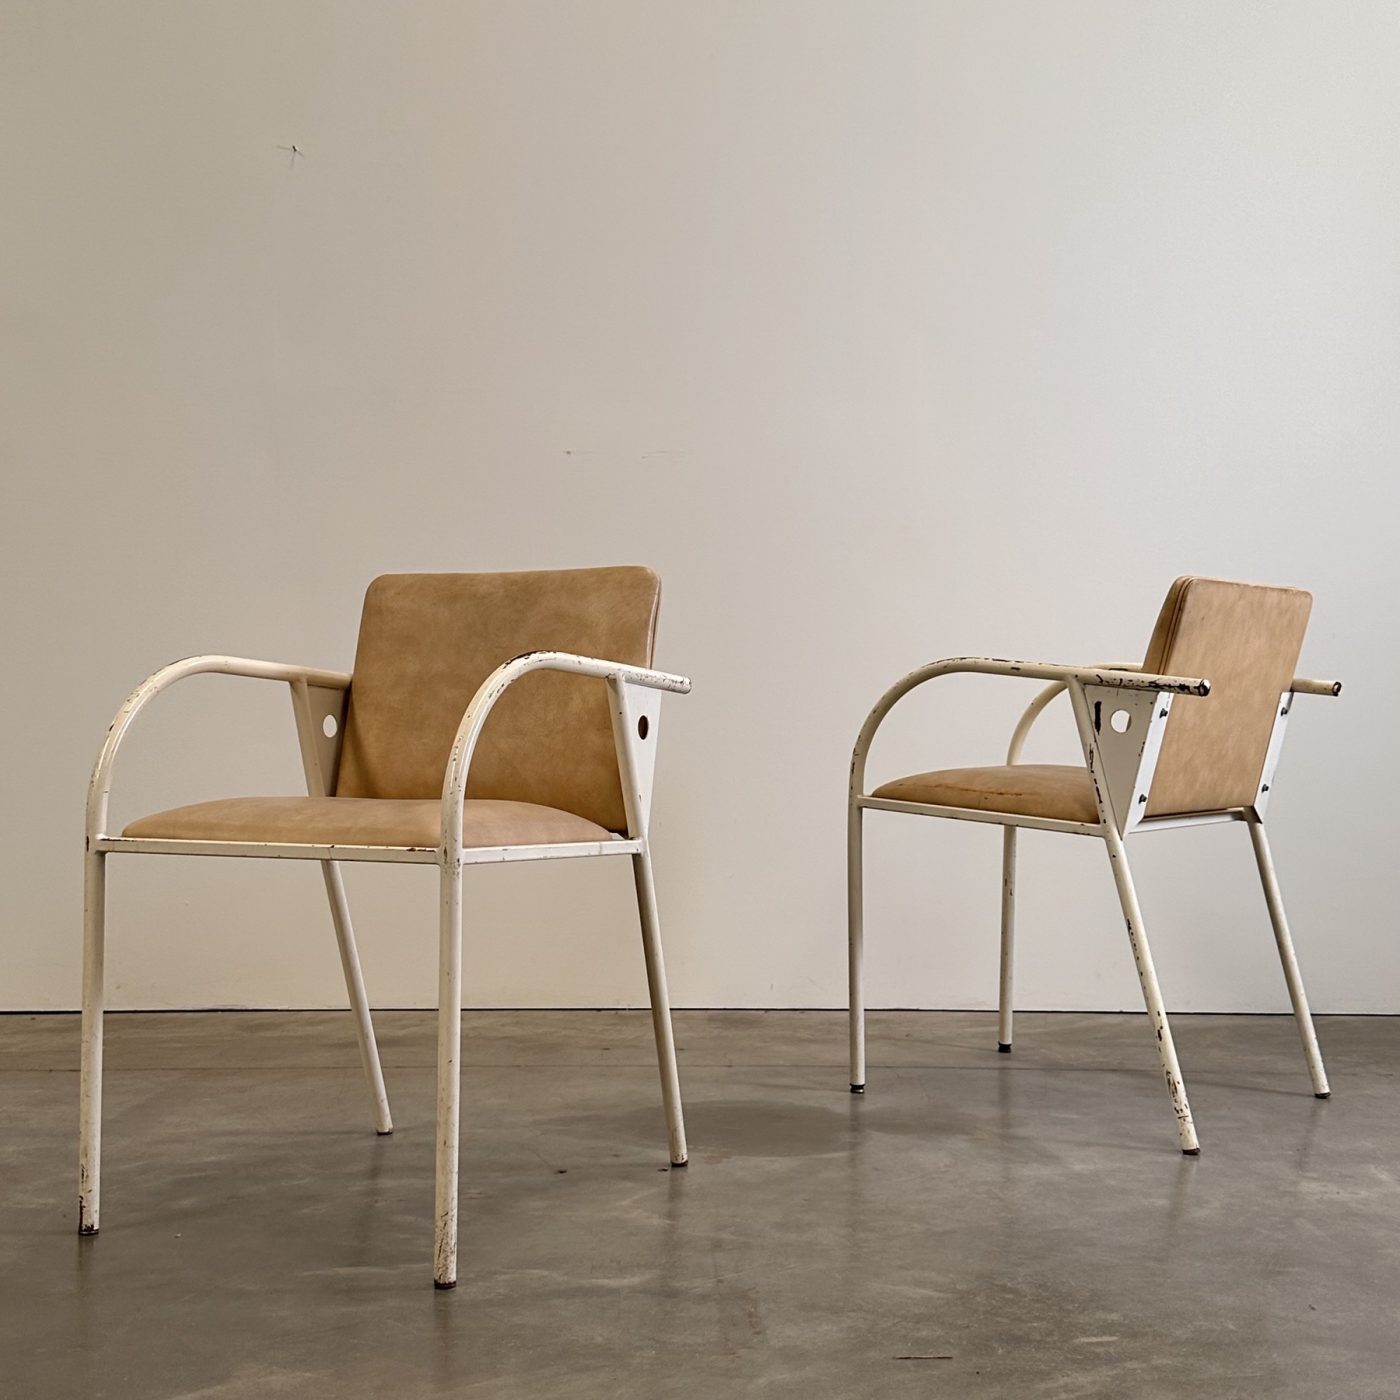 objet-vagabond-metal-armchairs0008